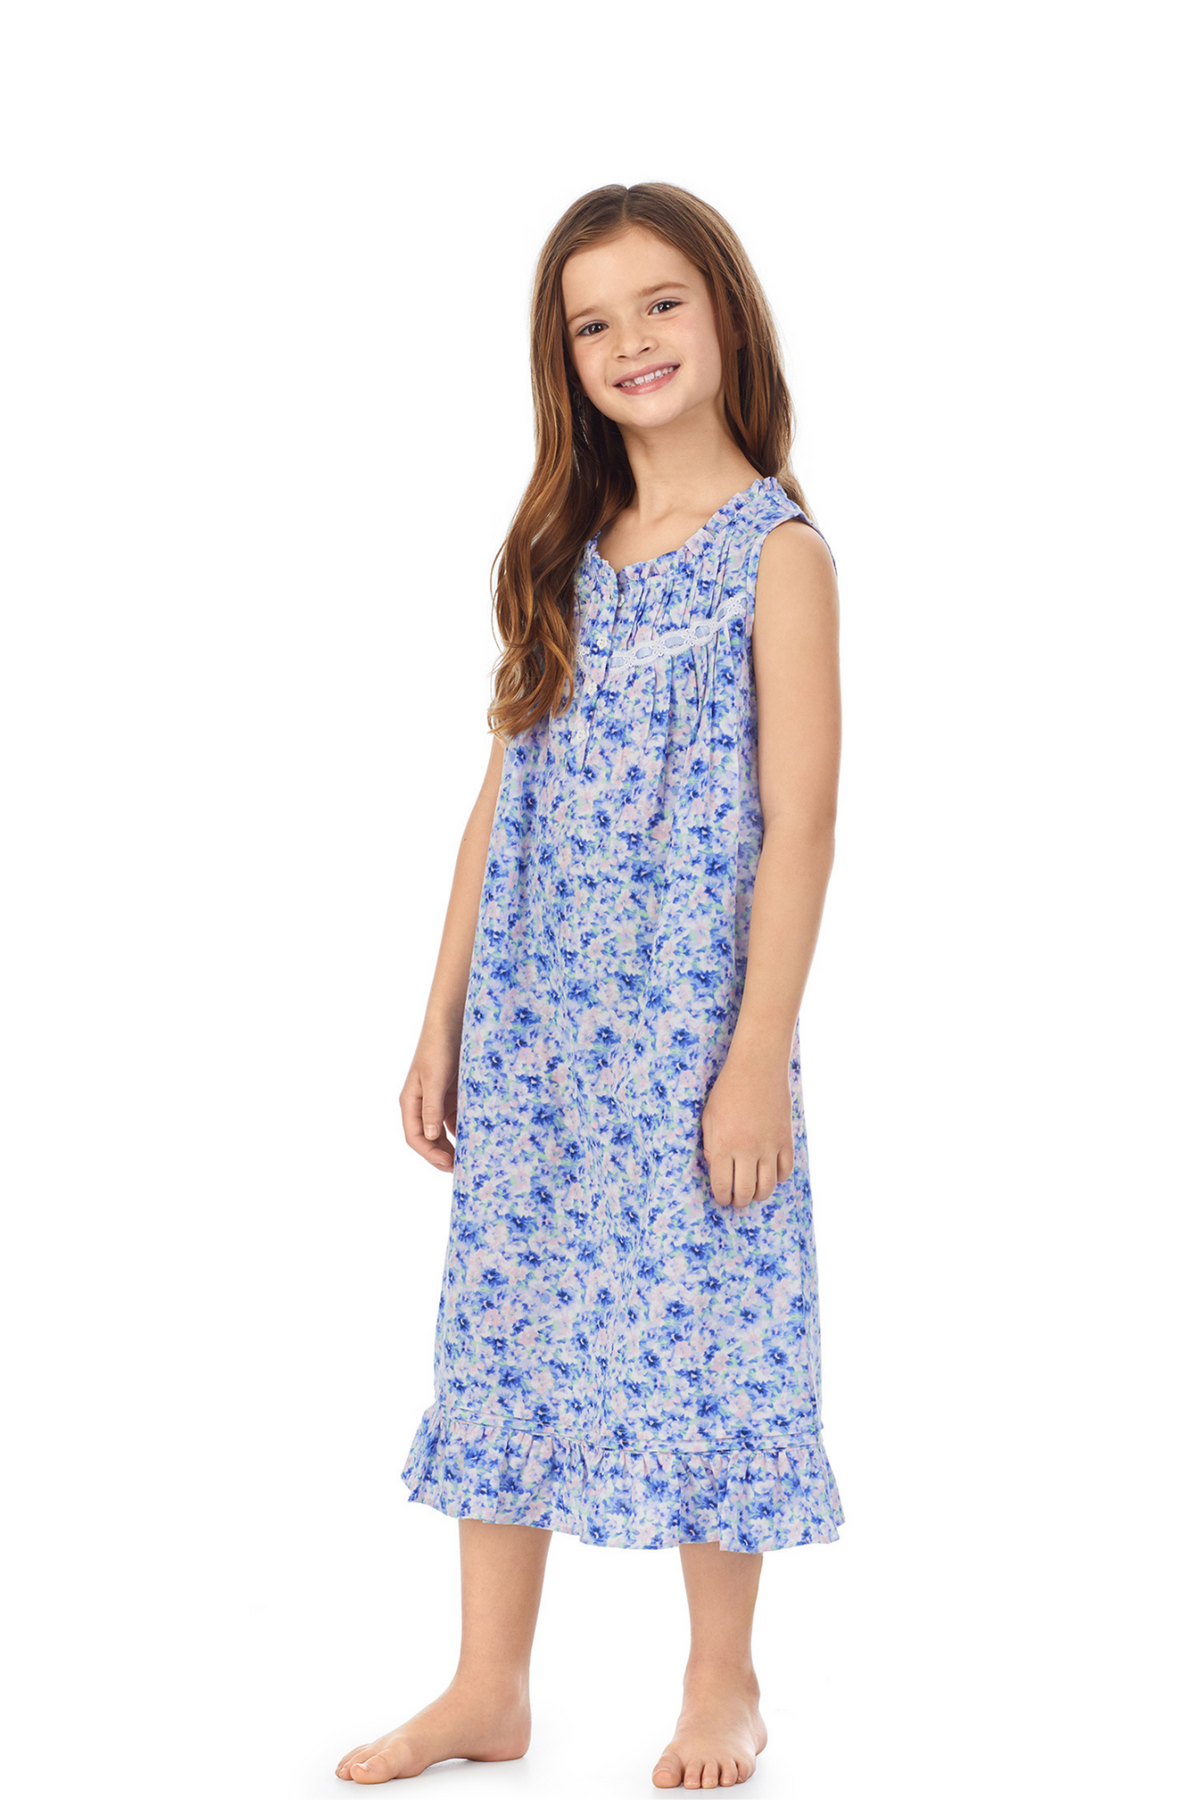 A girl wearing blue sleeveless lil eileen mother&#39;s garden girls nightgown.